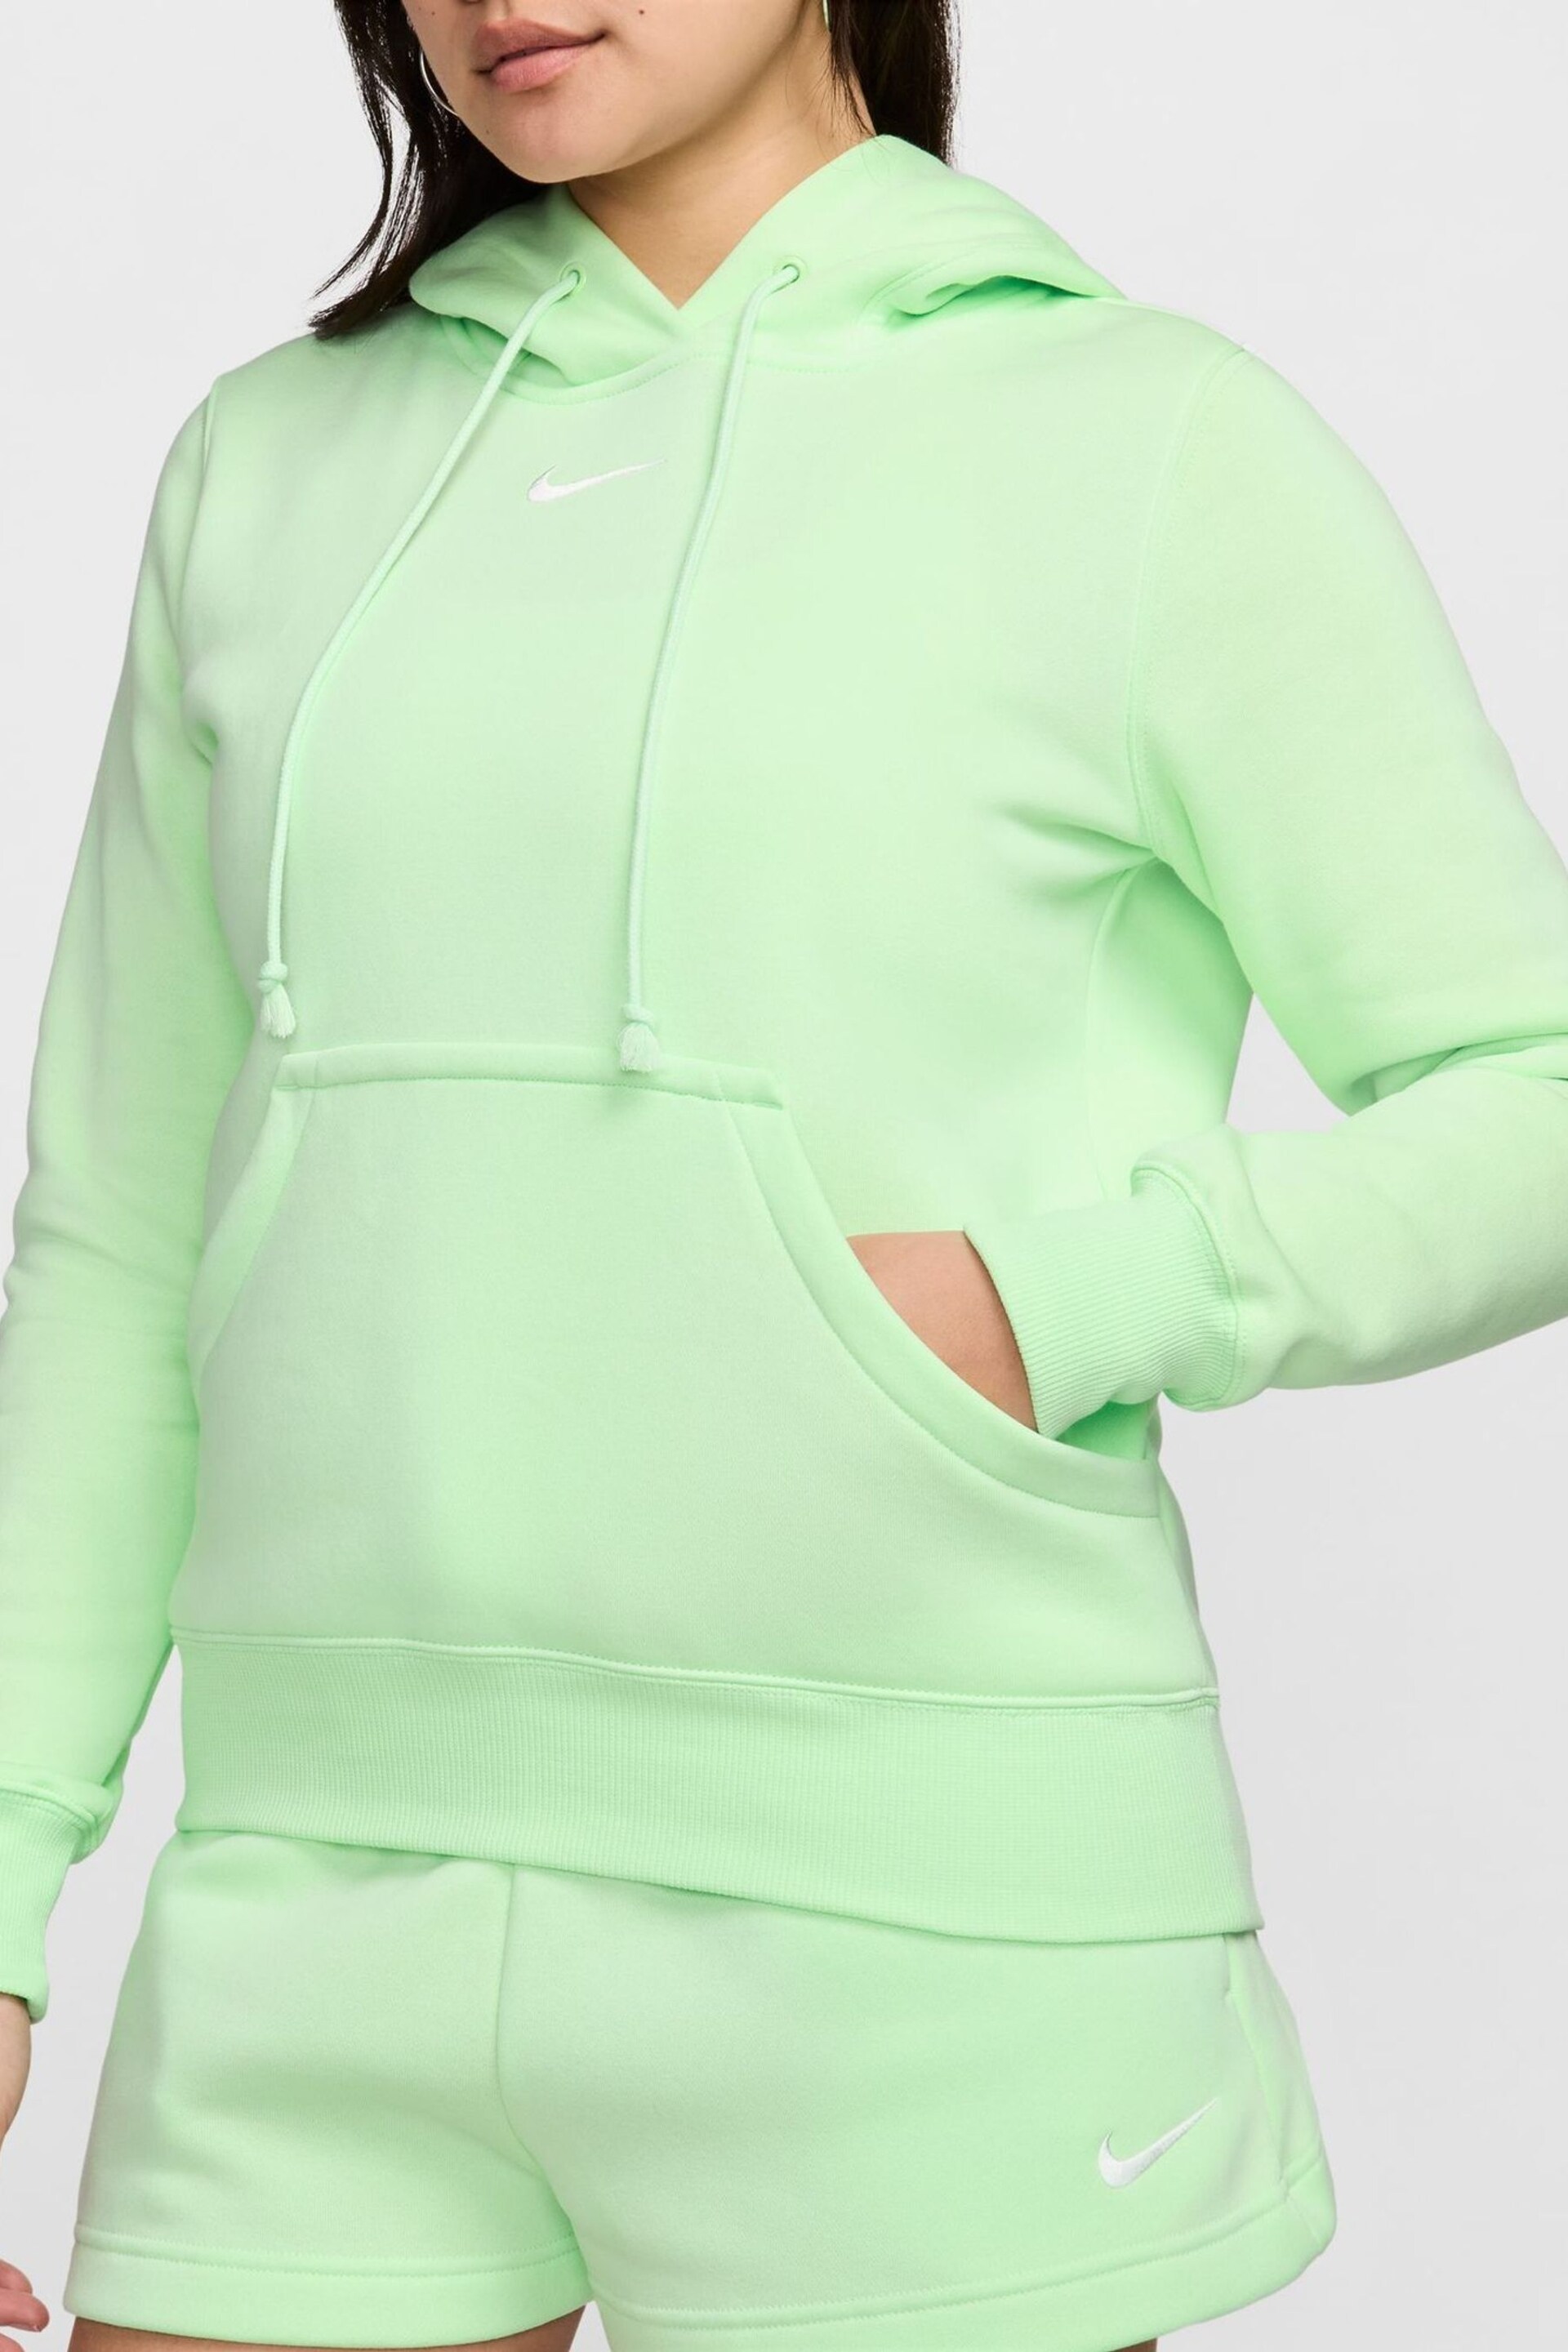 Nike Green Sportswear Phoenix Fleece Pullover Hoodie - Image 5 of 9